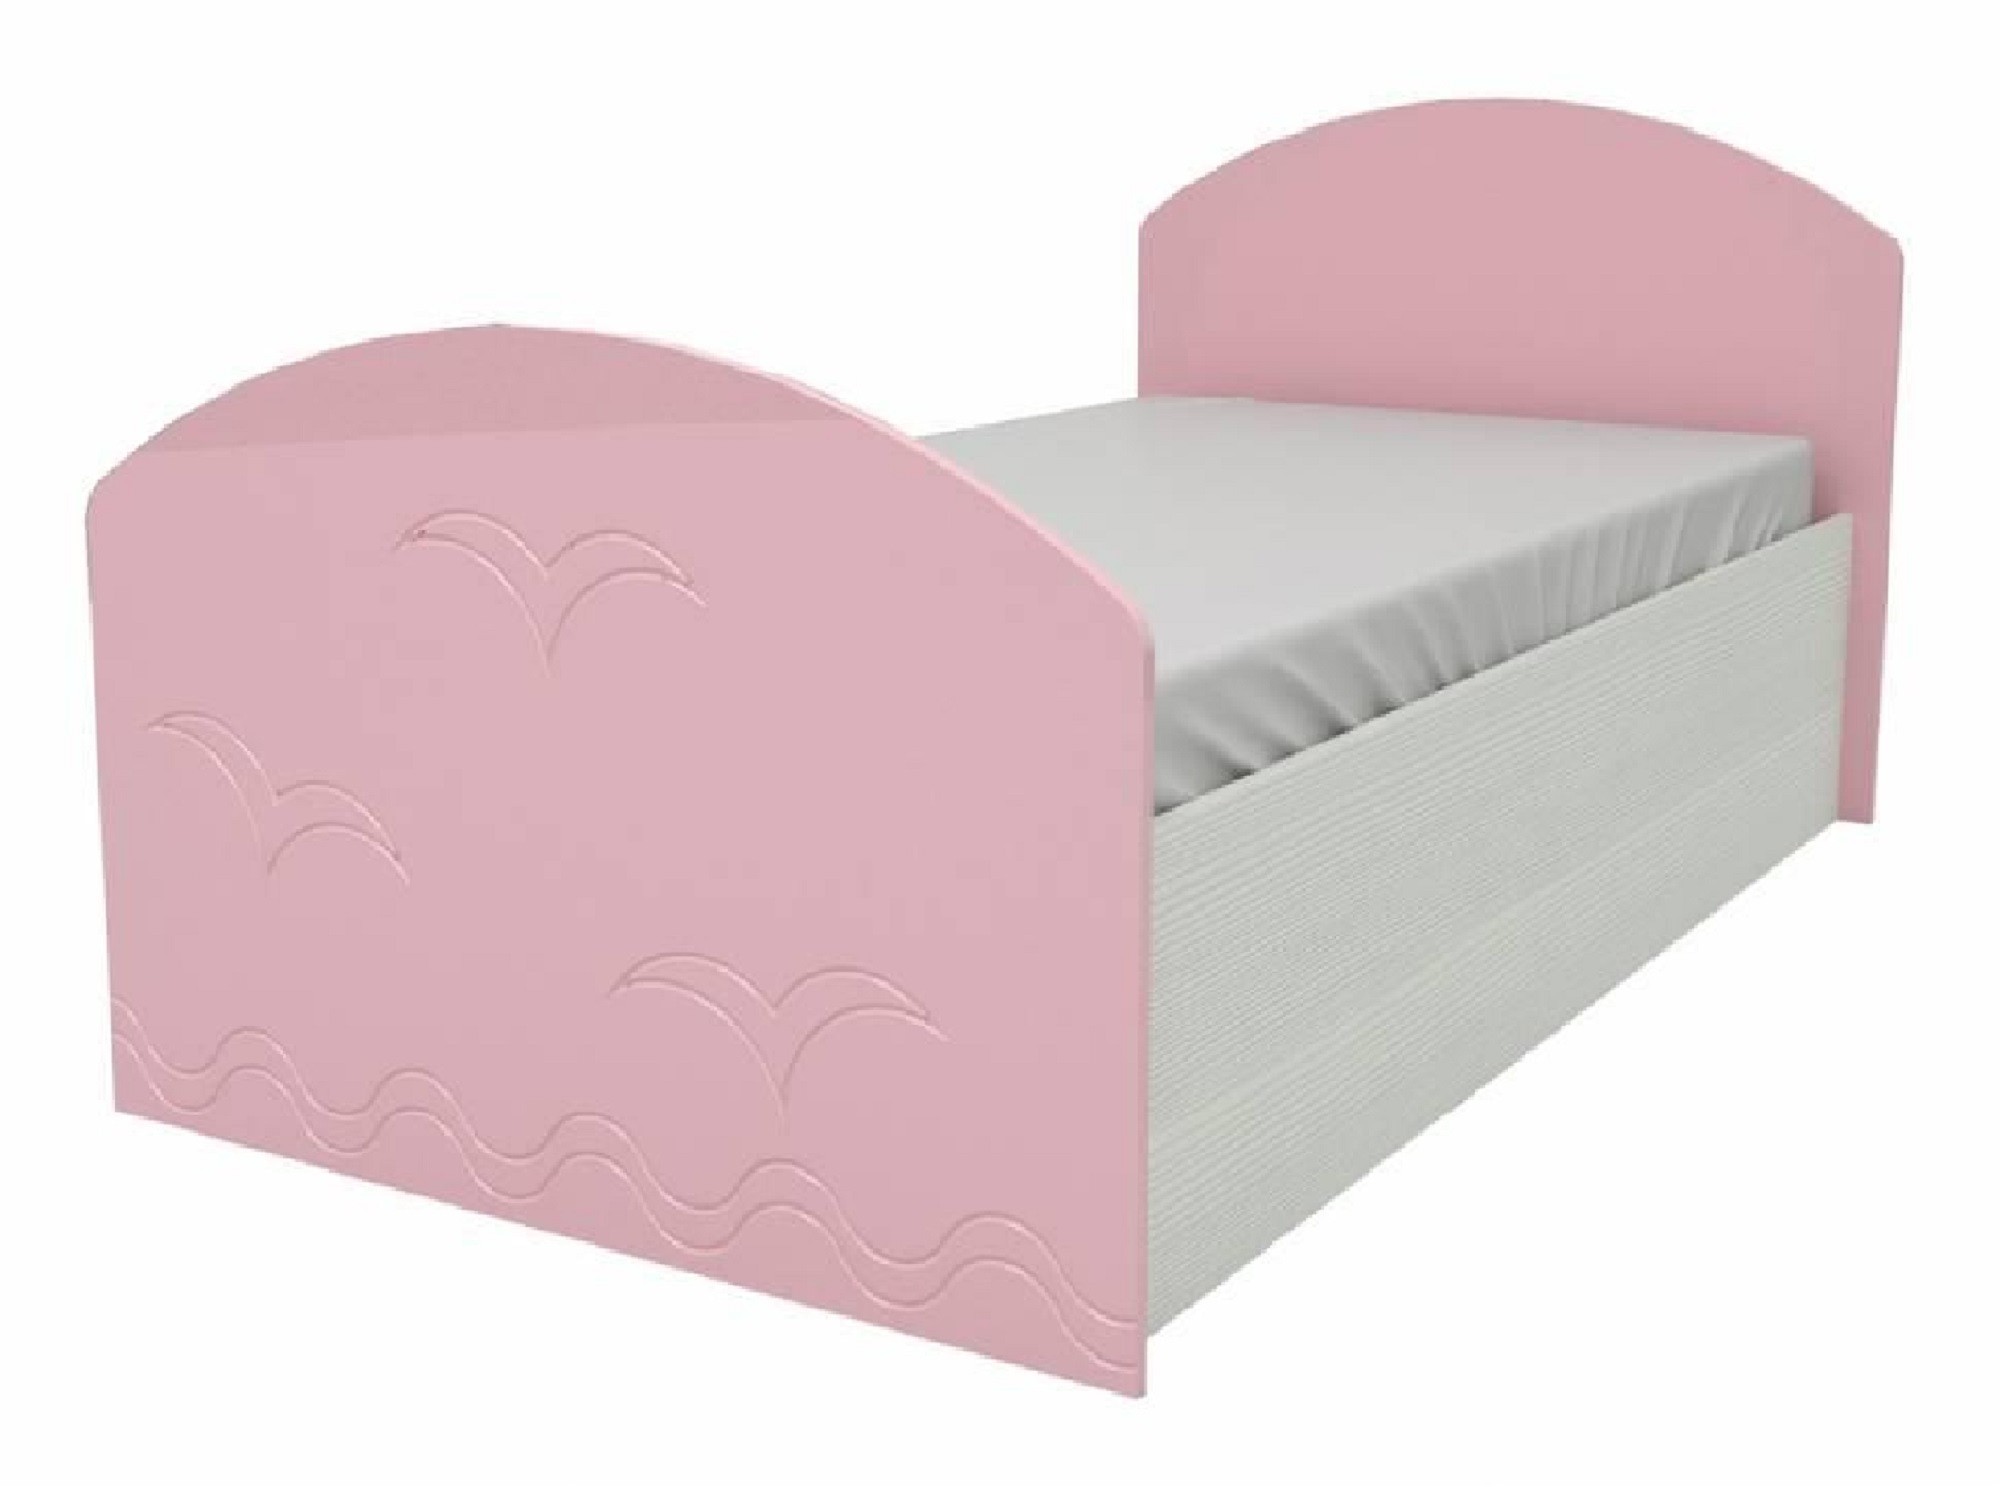 Юниор-2 Детская кровать 80, металлик (Розовый металлик, Дуб белёный) Дуб белёный, МДФ, ЛДСП юниор 1 двухъярусная кровать 80 бирюза металлик дуб белёный бирюза металлик зеленый лдсп